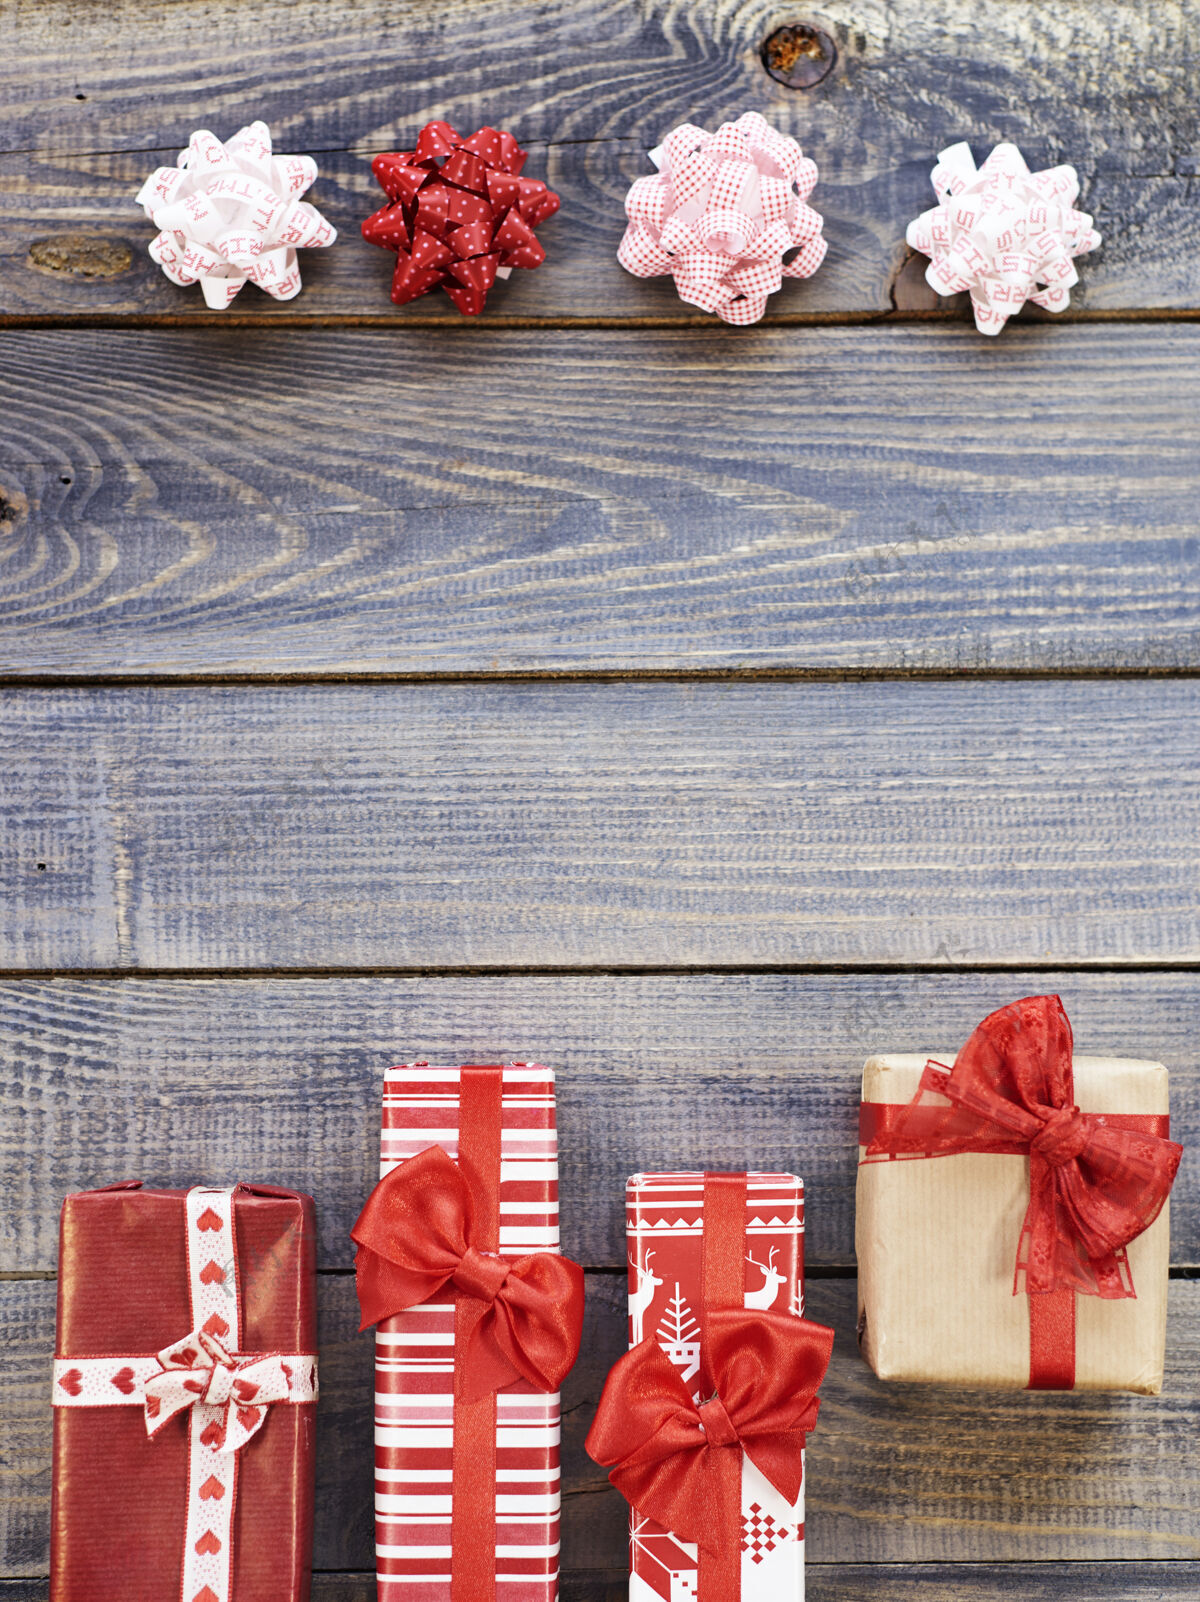 礼物与蝴蝶结相对的圣诞礼物在一排圣诞礼物并排